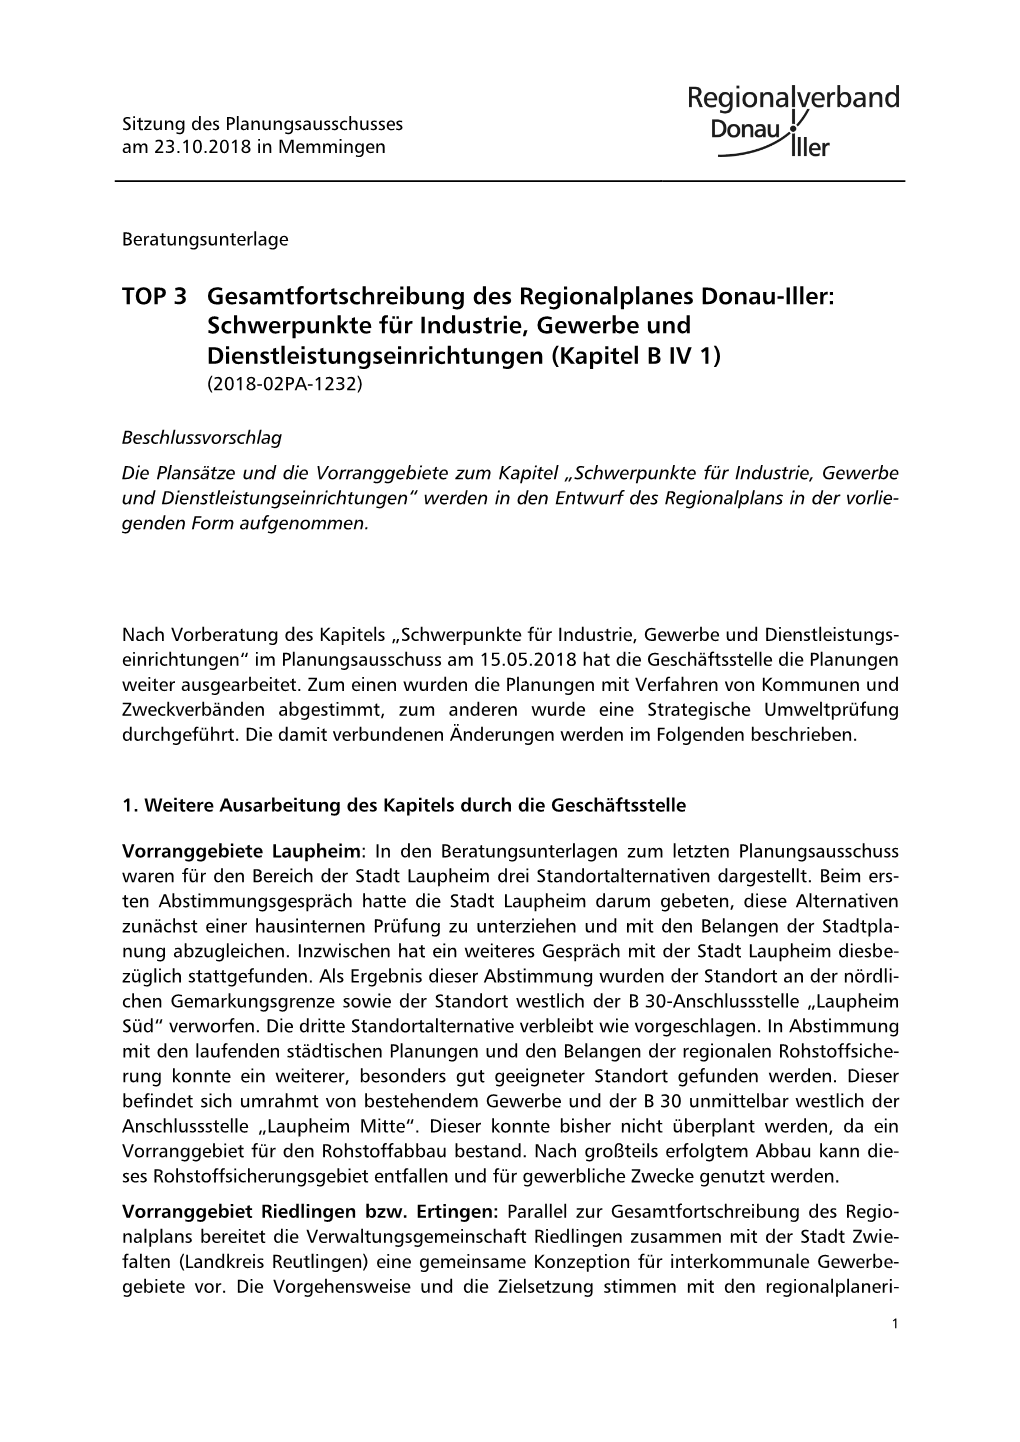 TOP 3 Gesamtfortschreibung Des Regionalplanes Donau-Iller: Schwerpunkte Für Industrie, Gewerbe Und Dienstleistungseinrichtungen (Kapitel B IV 1) (2018-02PA-1232)